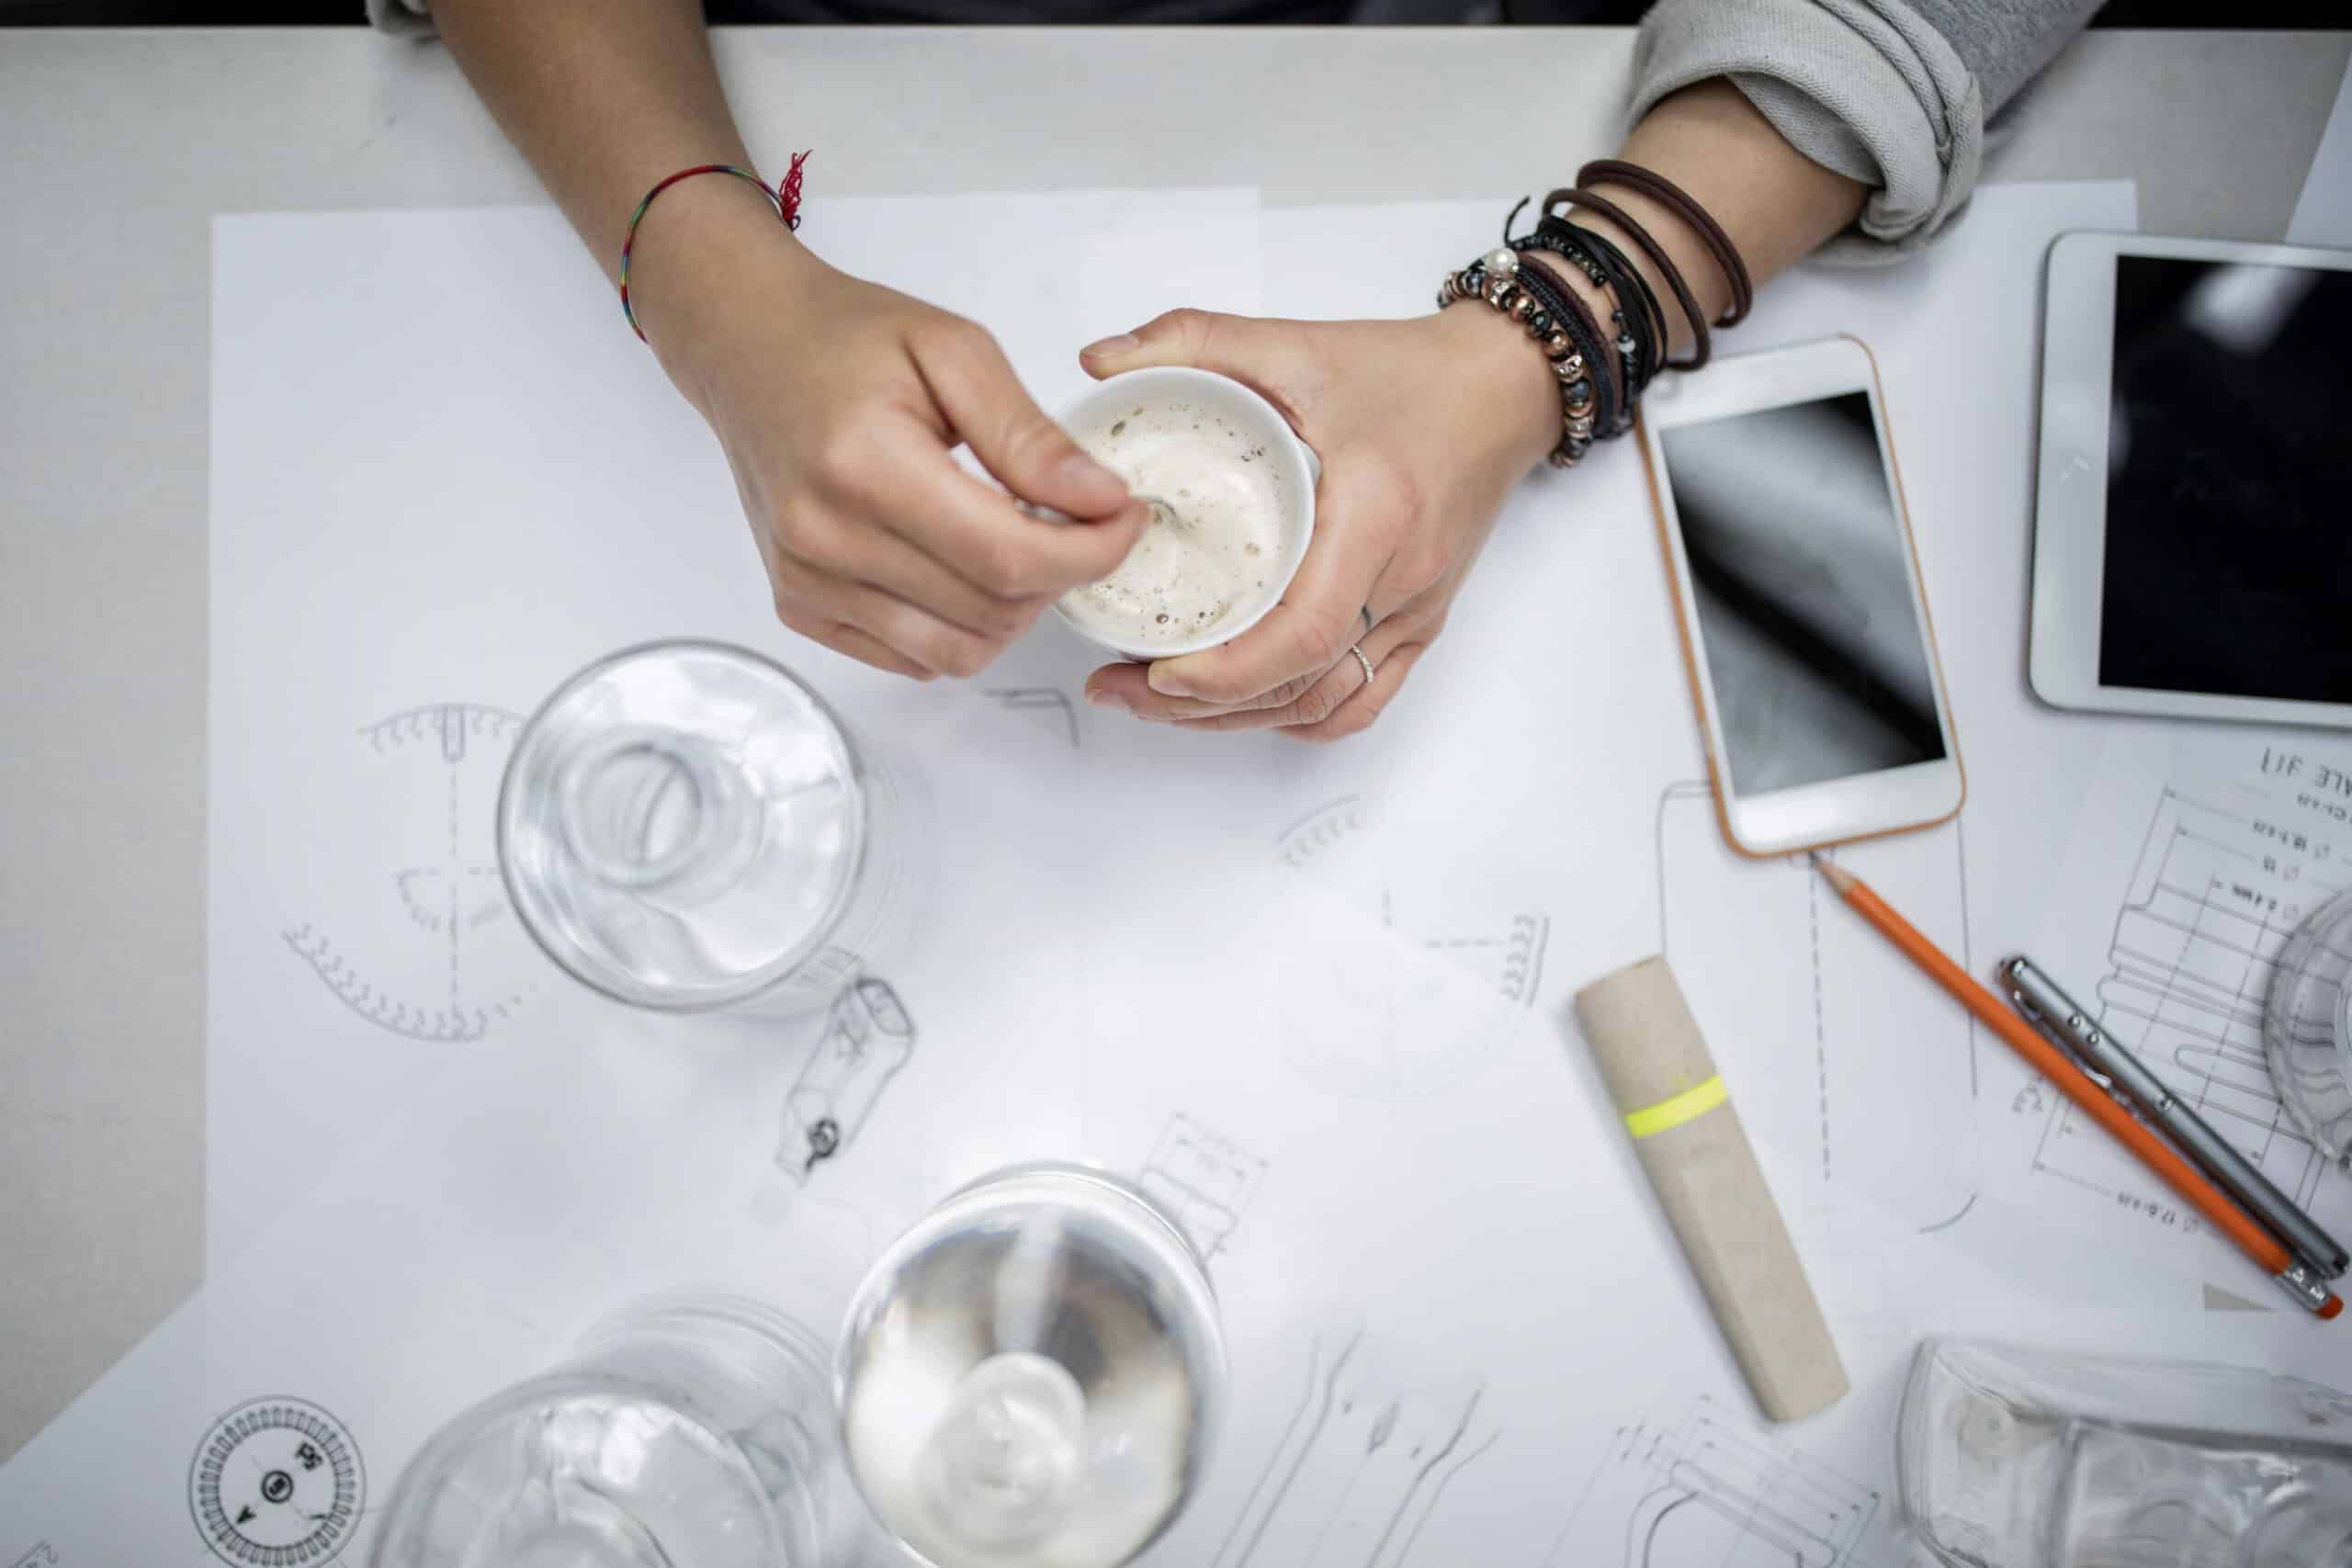 Draufsicht auf die Hände einer Person, die Materialien in einer Tasse mischt, umgeben von wissenschaftlichen Diagrammen, Gläsern, Bechern, einem Smartphone und einem Tablet auf einem weißen Tisch. © Fotografie Tomas Rodriguez